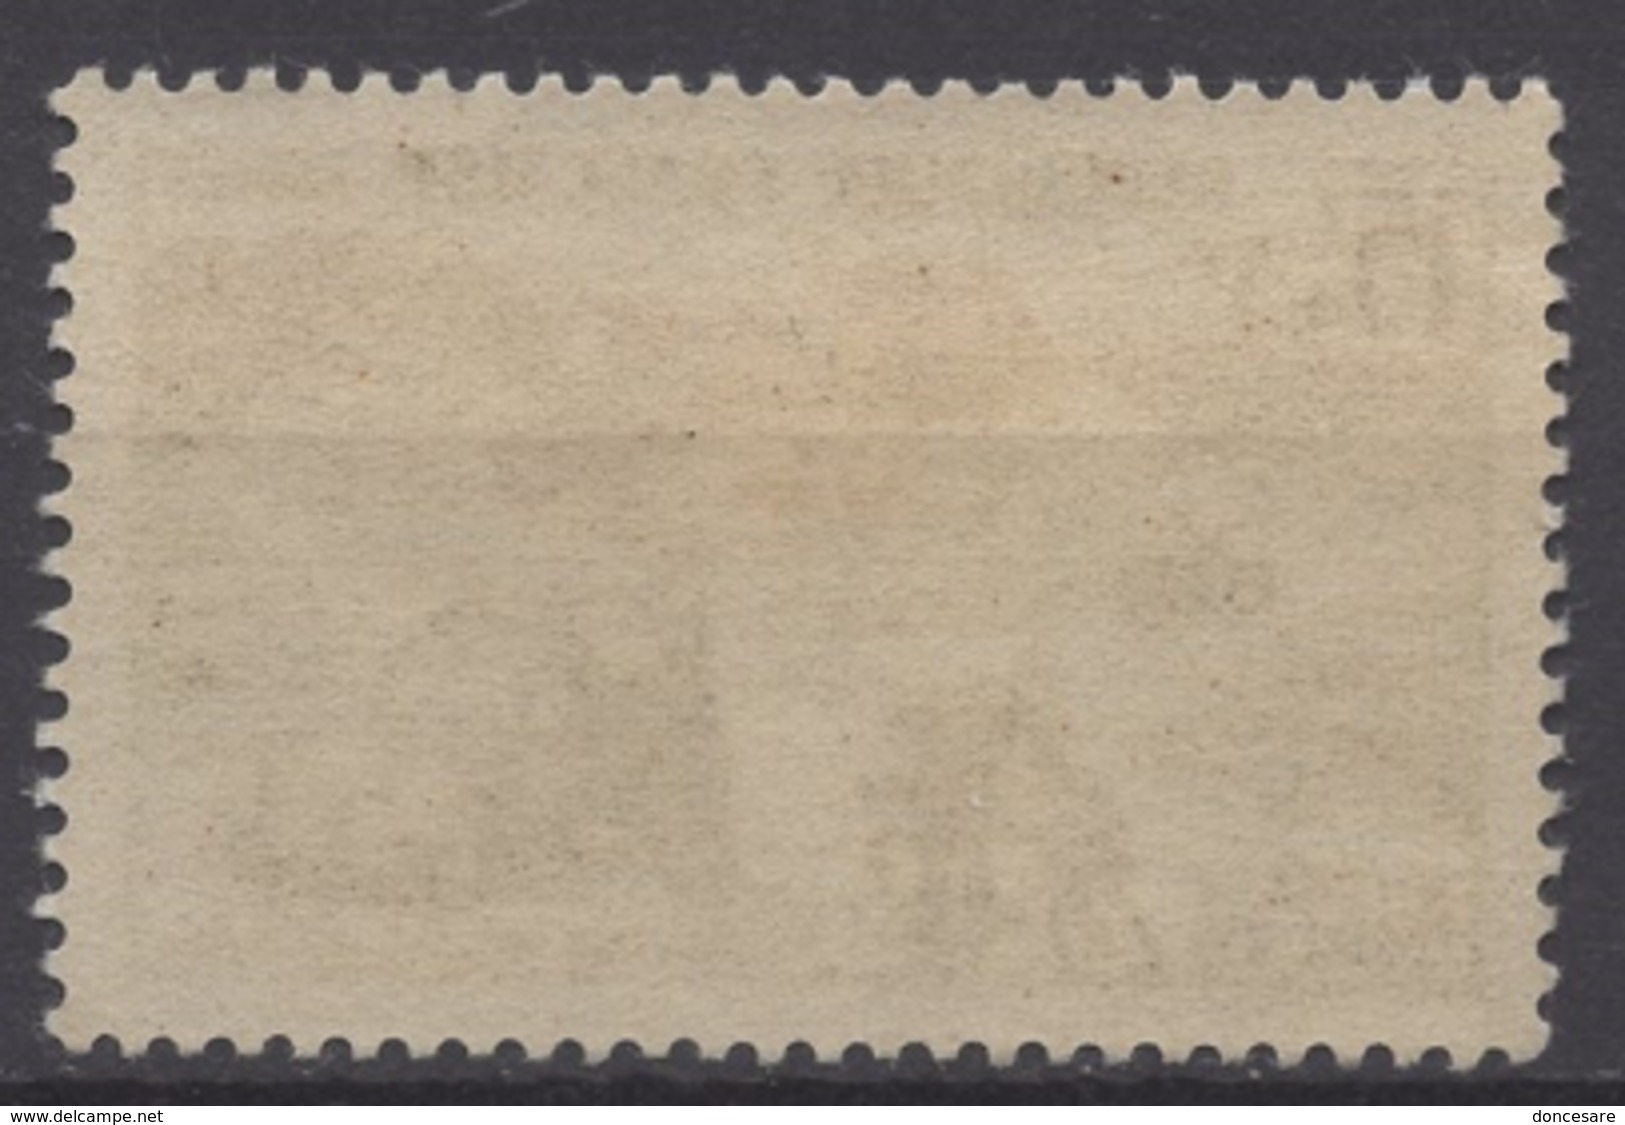 FRANCE 1958 - Y.T. N° 1151  - NEUF** /2 - Unused Stamps